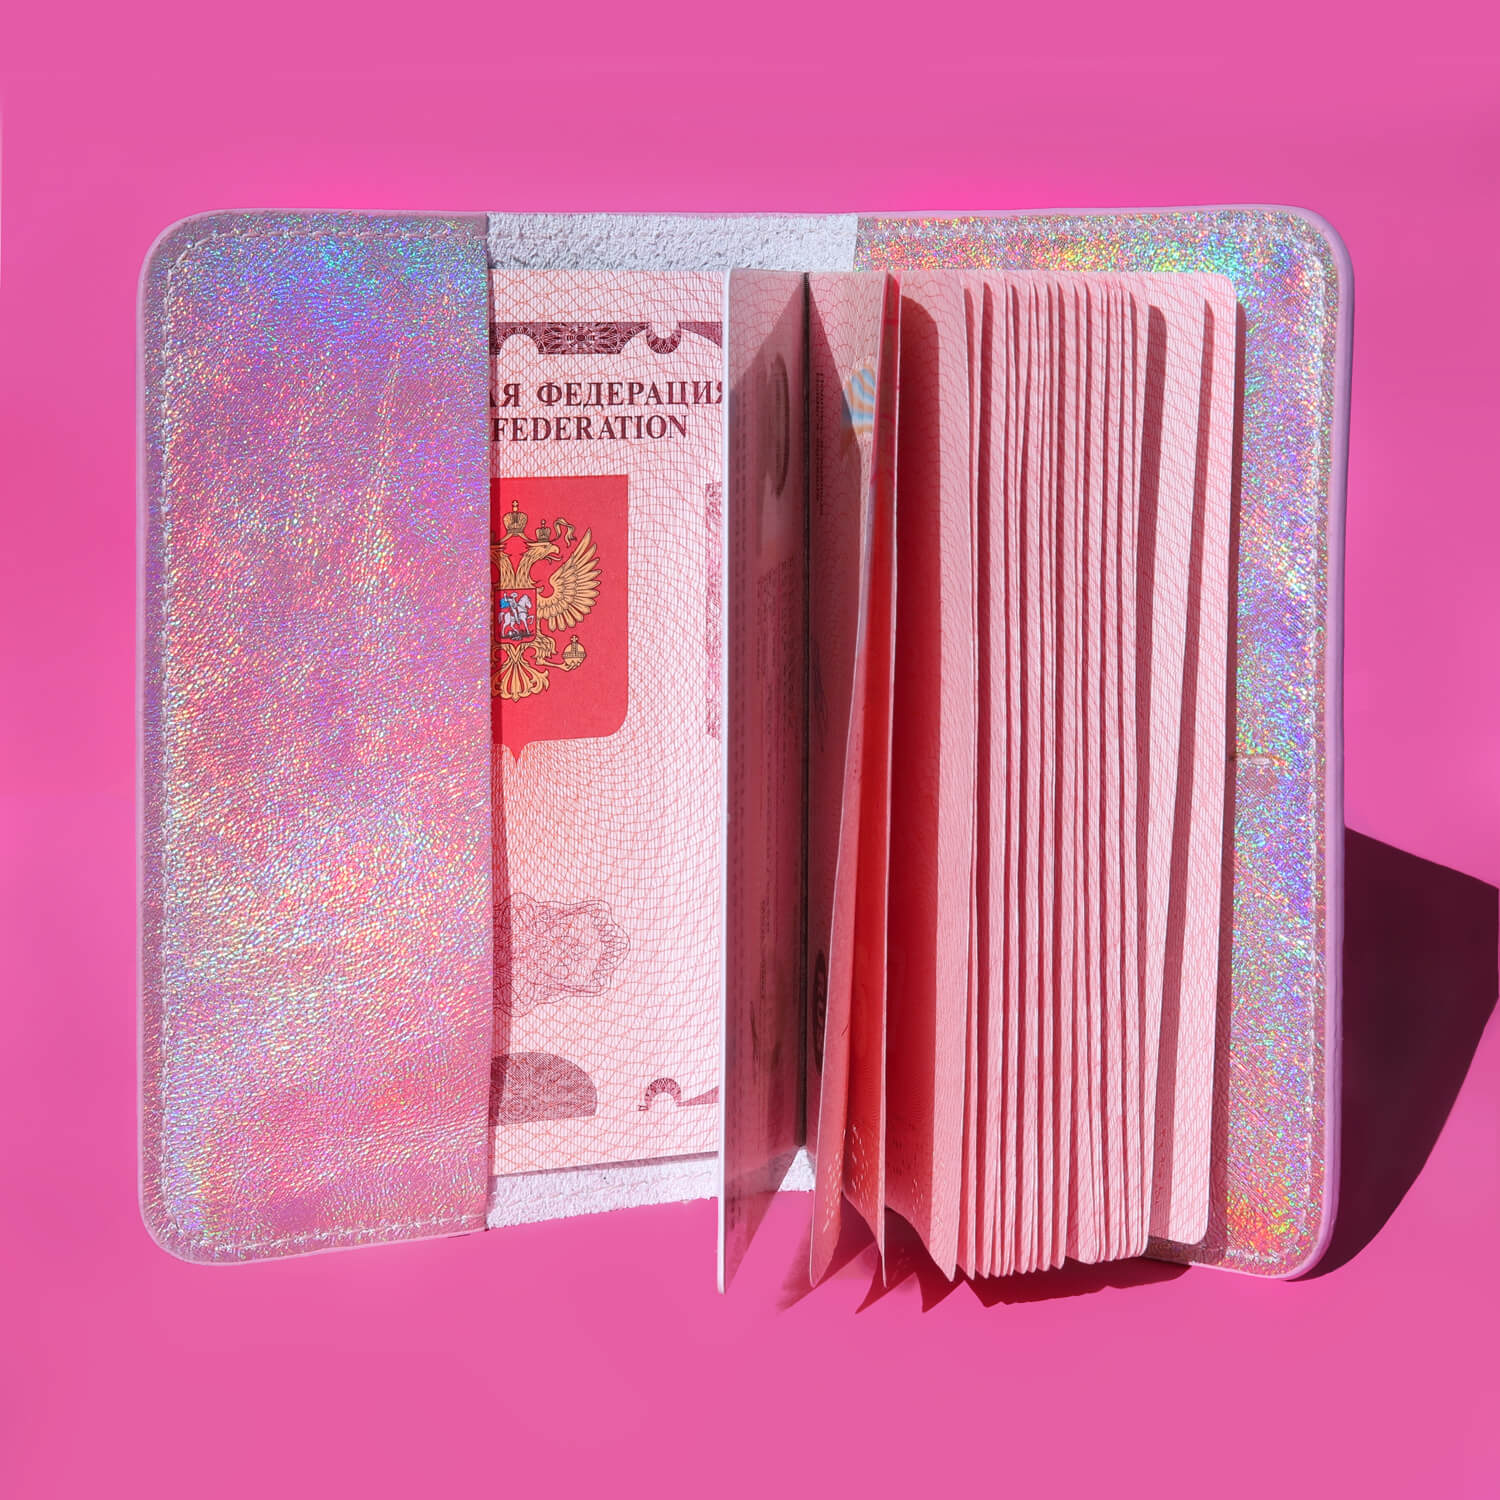 Голографическая обложка для паспорта, цвет Розовый, фото 2